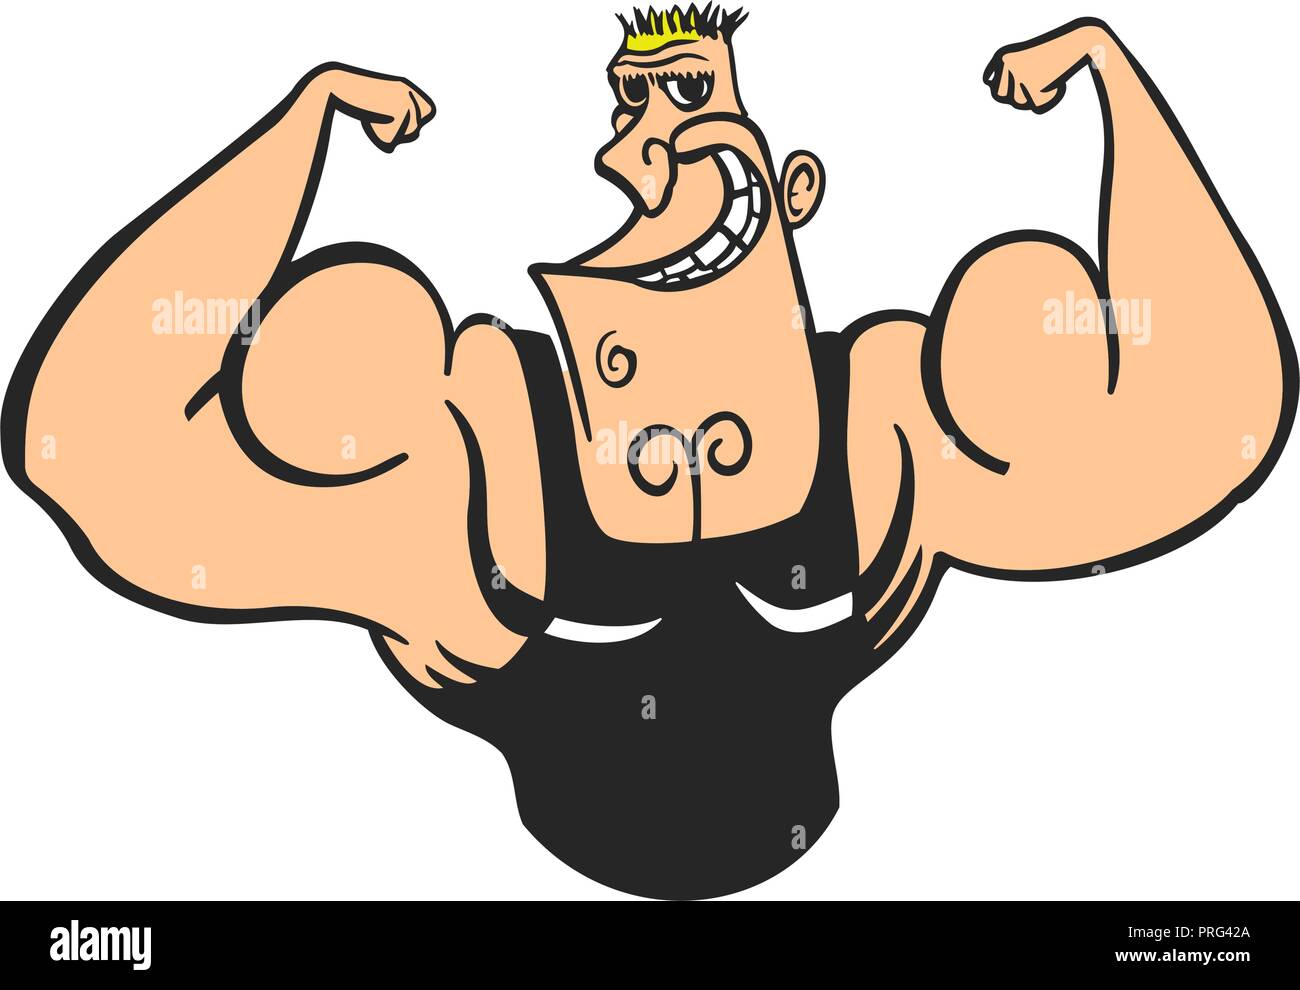 Personaggio dei fumetti, uomo muscolare, illustrazione vettoriale, modello di fitness, ponendo, bodybuilding, mens fisica in posa Illustrazione Vettoriale